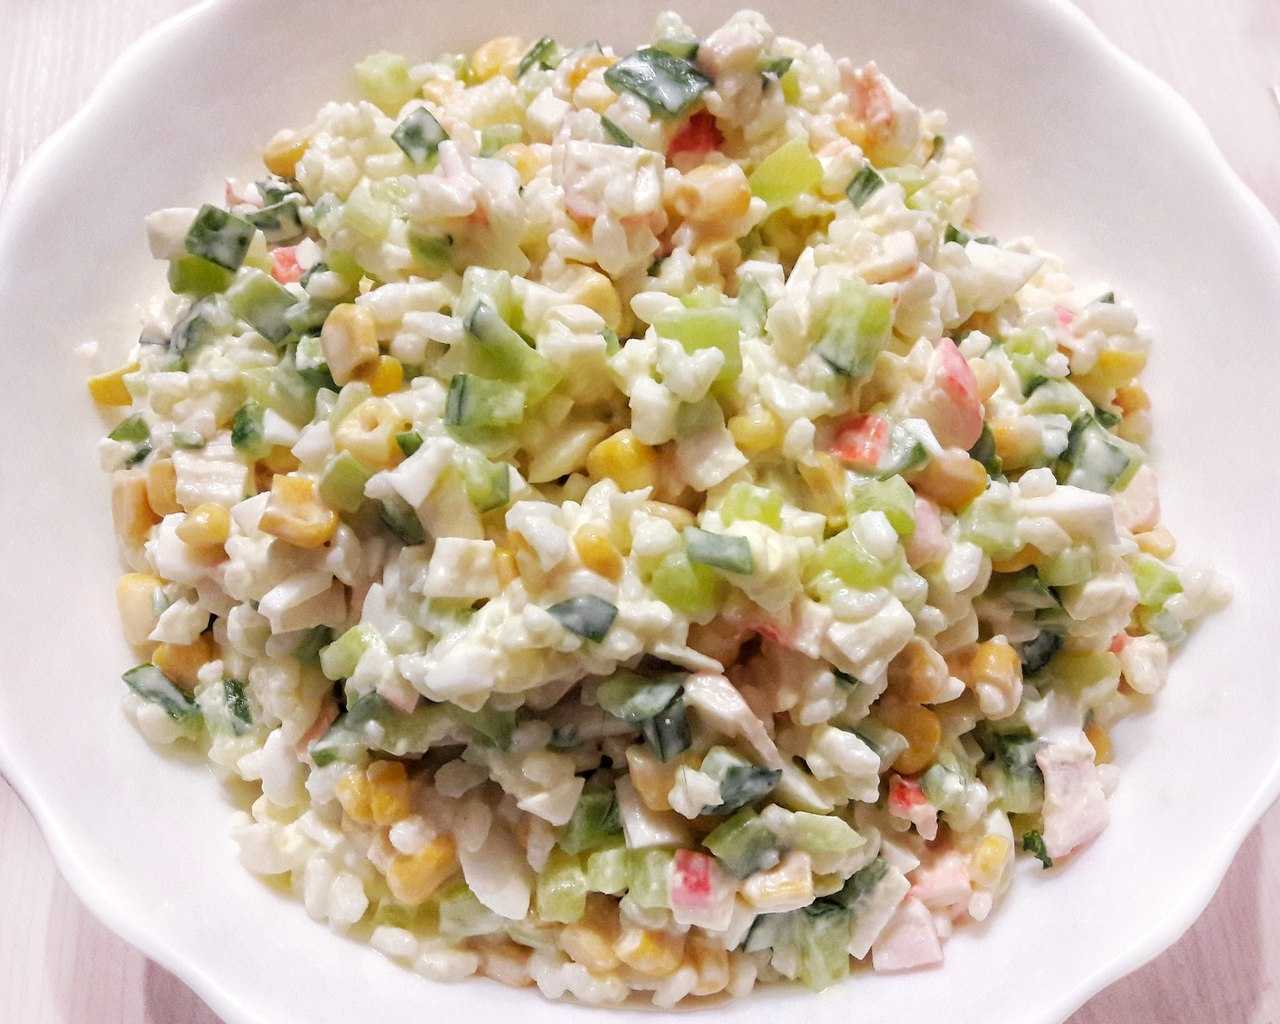 Крабовый салат из крабовых палочек без риса и 15 похожих рецептов: фото, калорийность, отзывы - 1000.menu